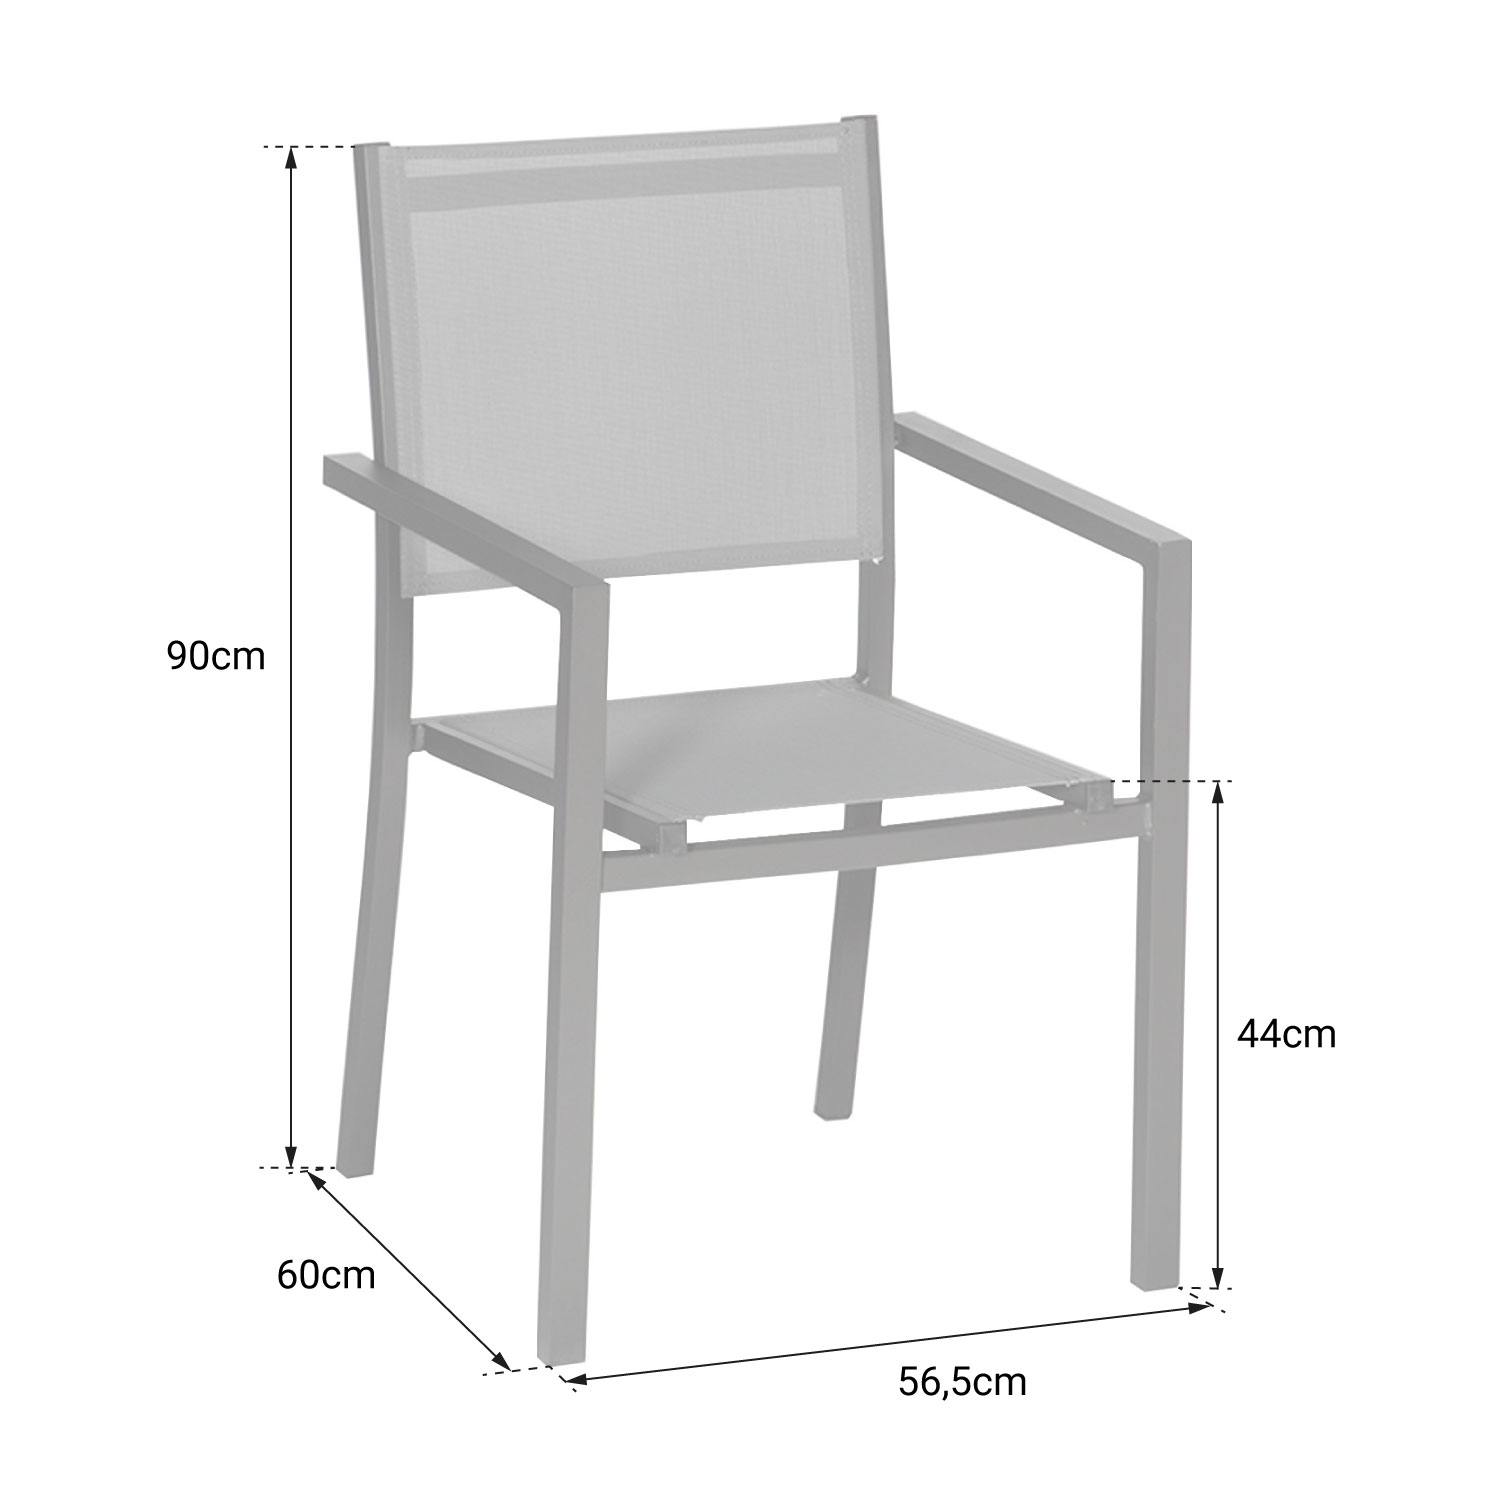 Lot de 10 chaises en aluminium anthracite - textilène gris